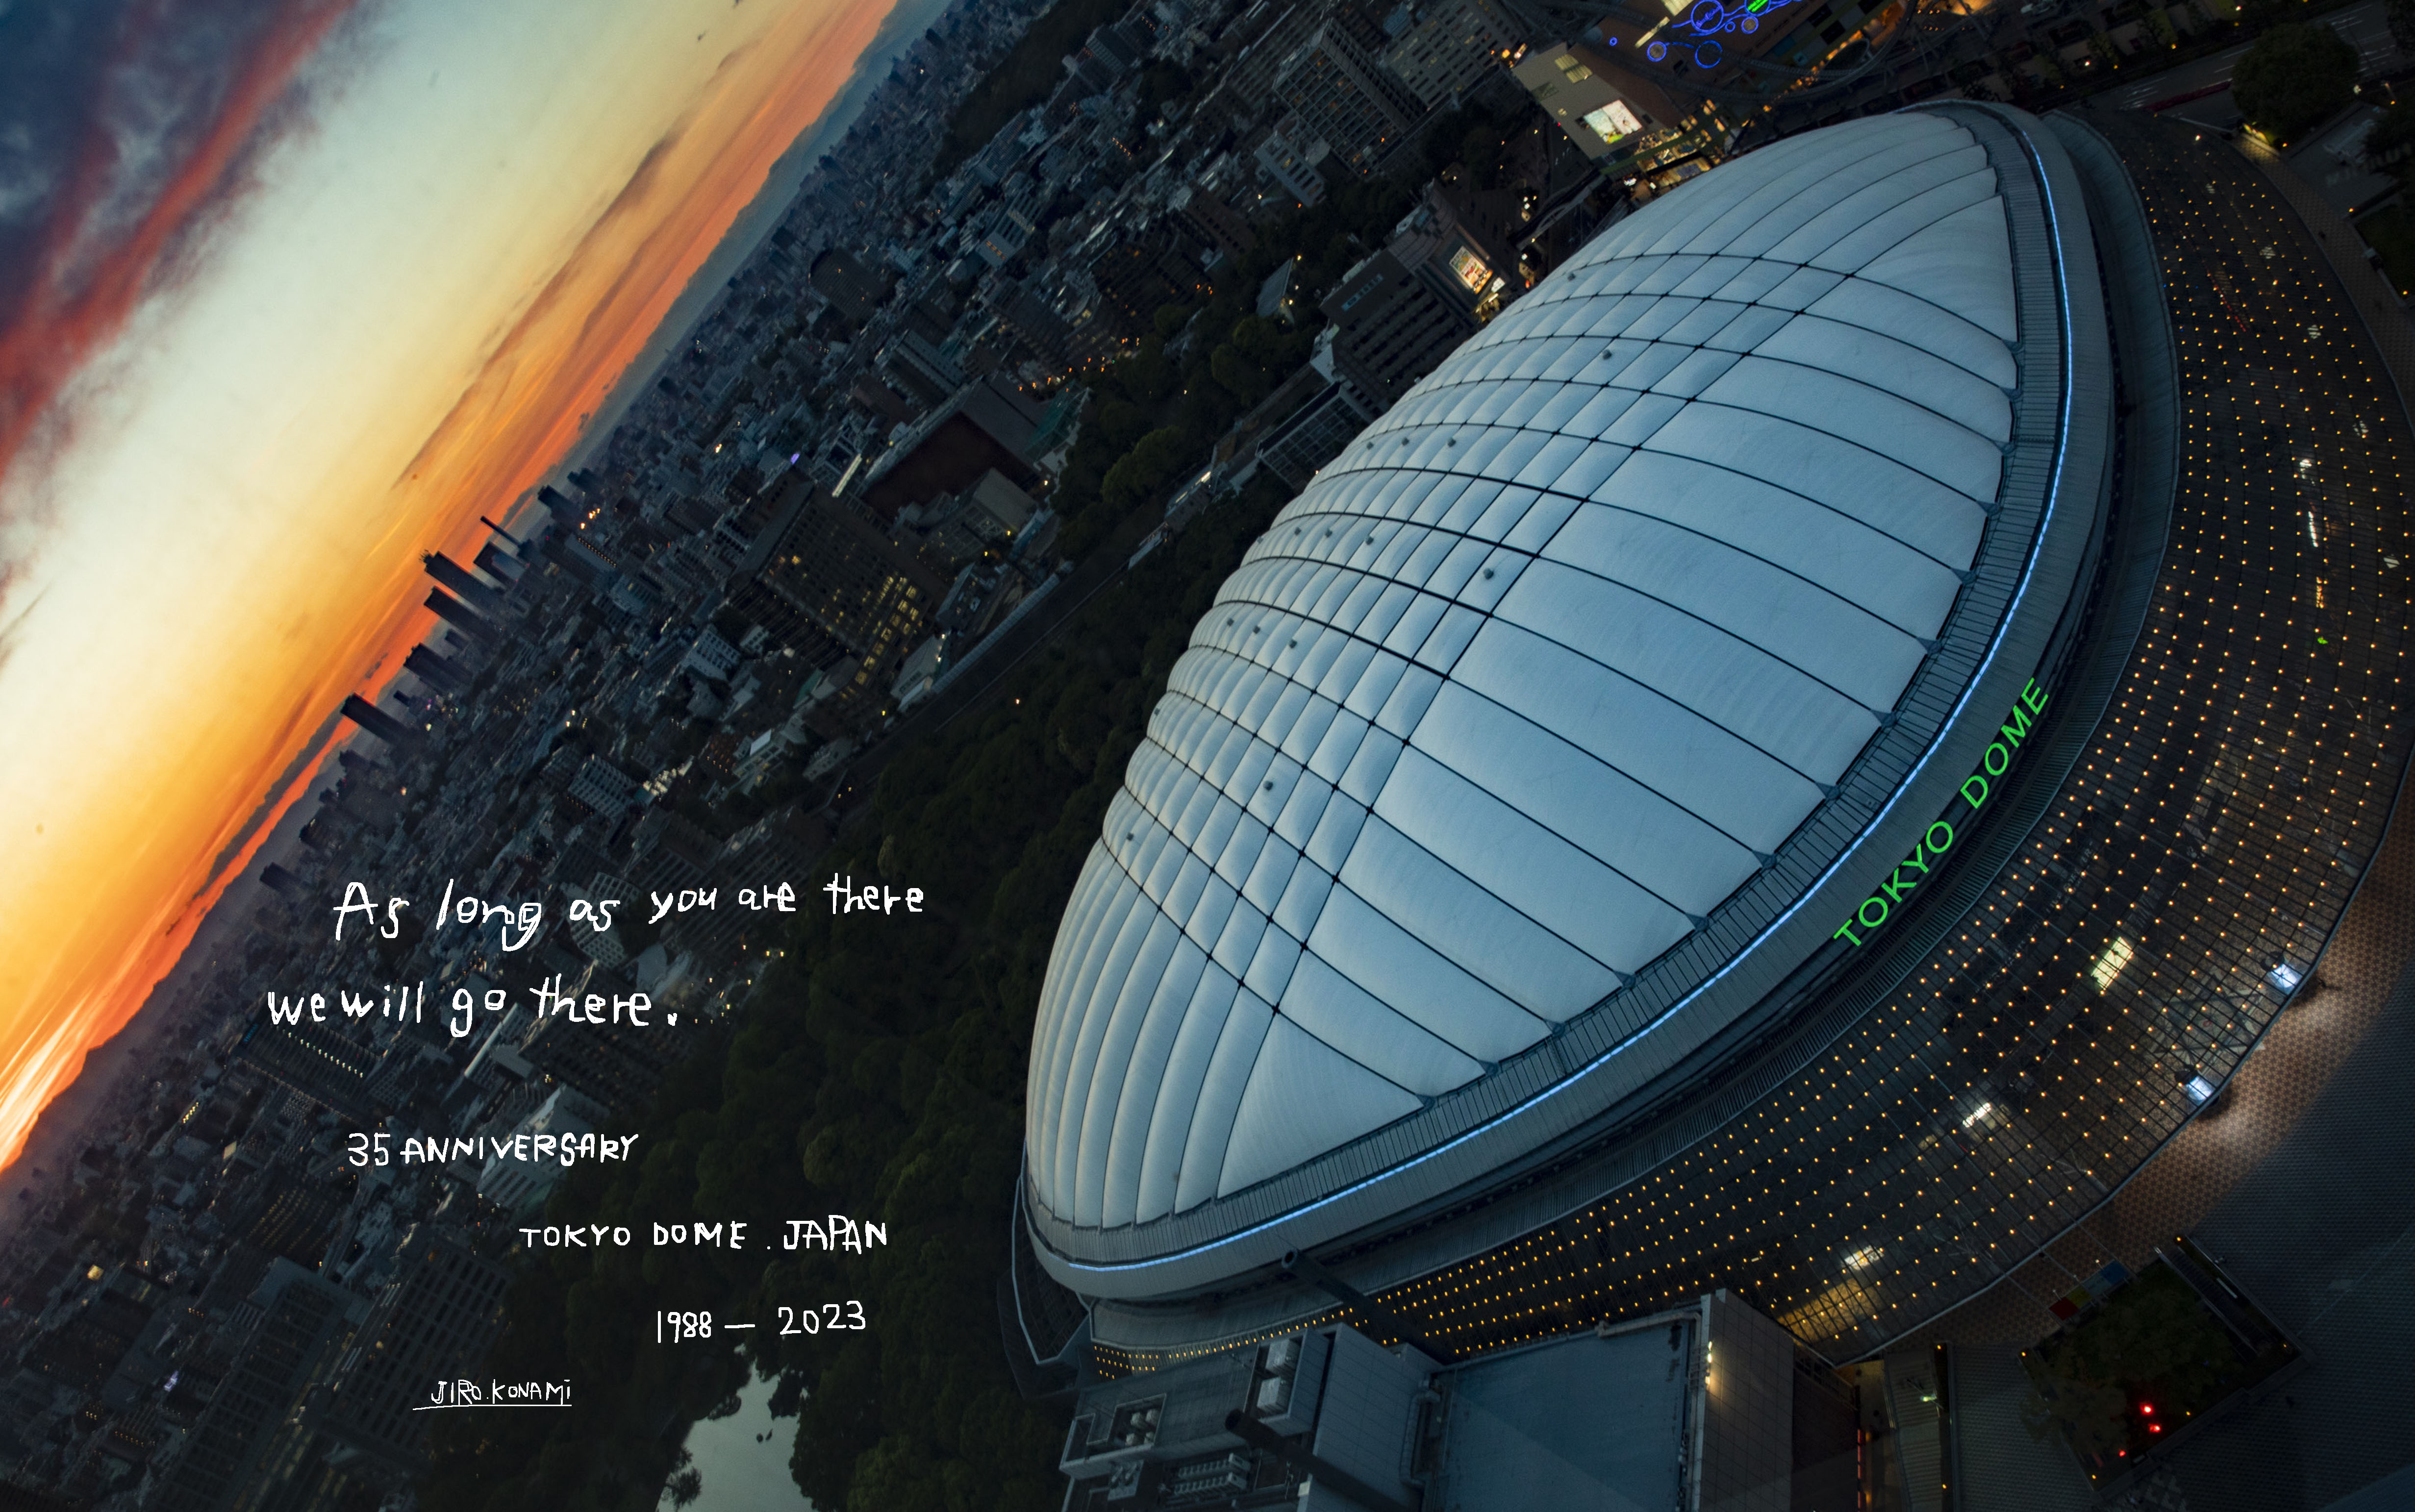 写真家・小浪次郎氏が撮り下ろした、開業35周年を迎えた日本のエンタメの聖地 “東京ドーム”の新ビジュアルを9/24(日)から公開。